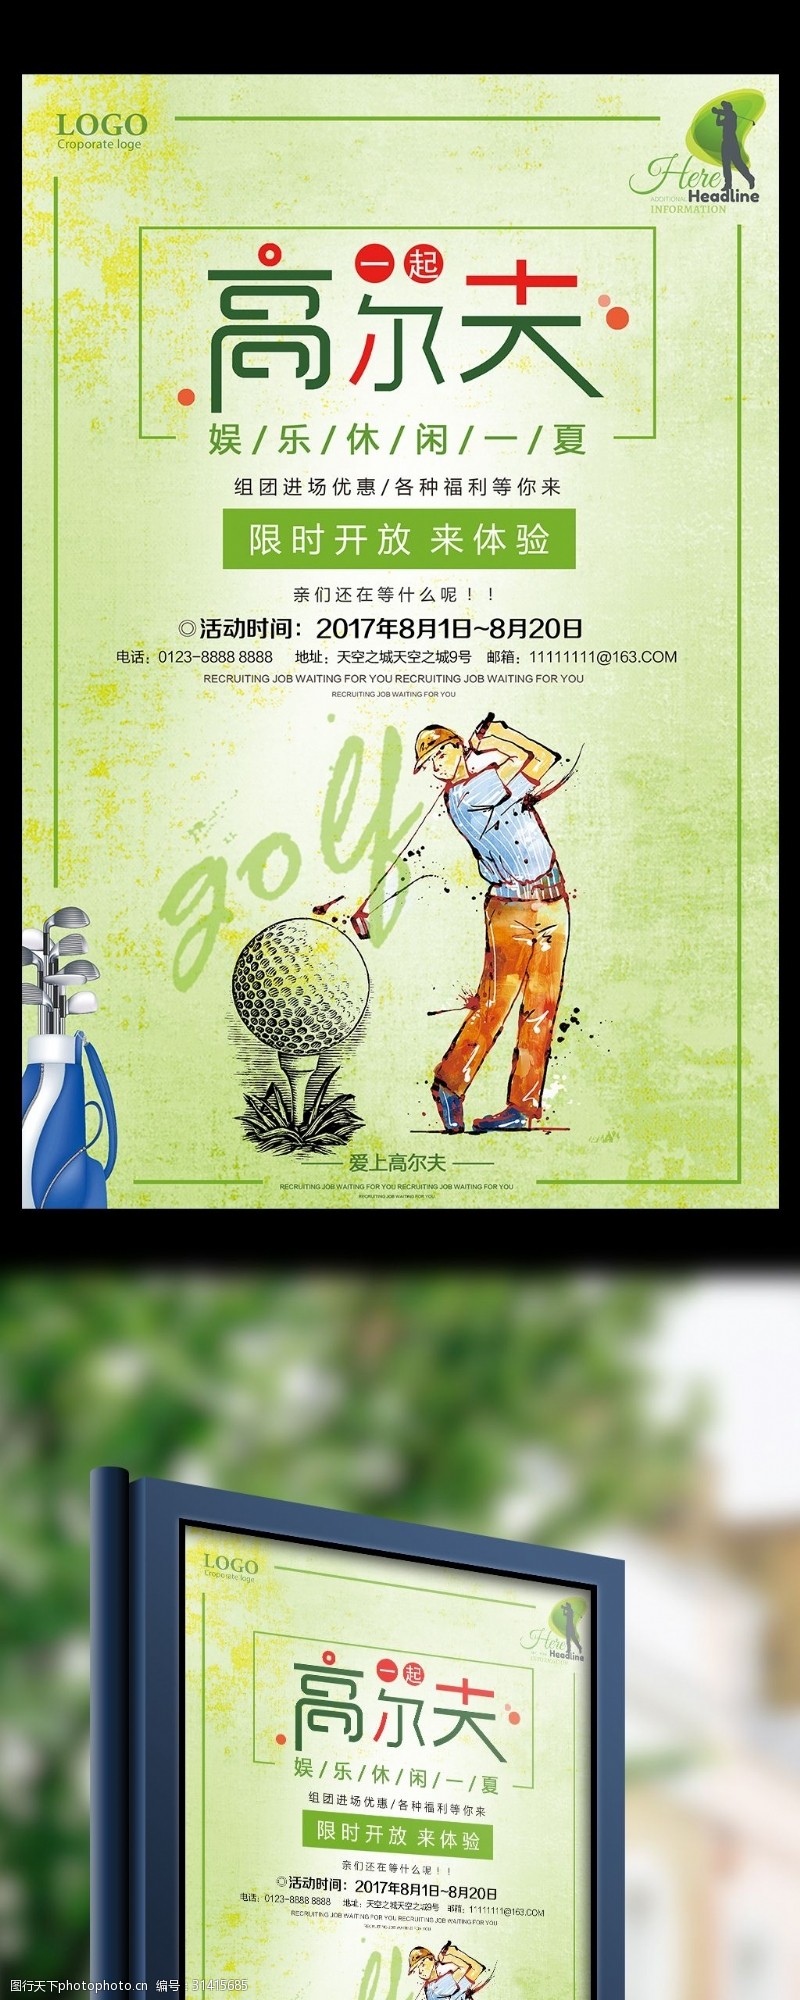 高尔夫比赛高尔夫限时宣传促销海报